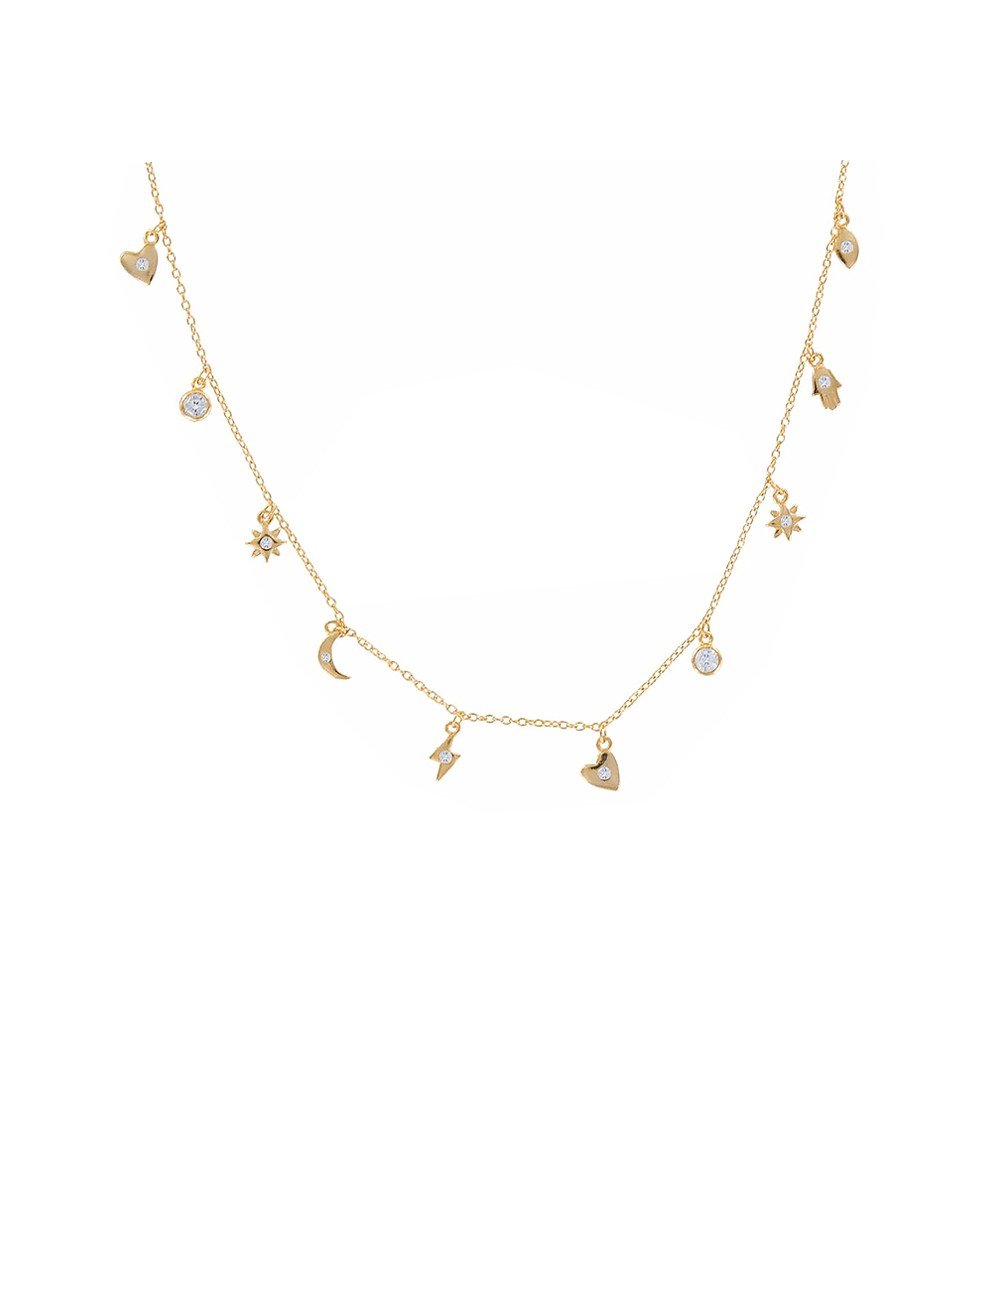 Majestic Leaf Charm 22K Gold Necklace Set | Gold necklace set, 22k gold  necklace, Necklace set